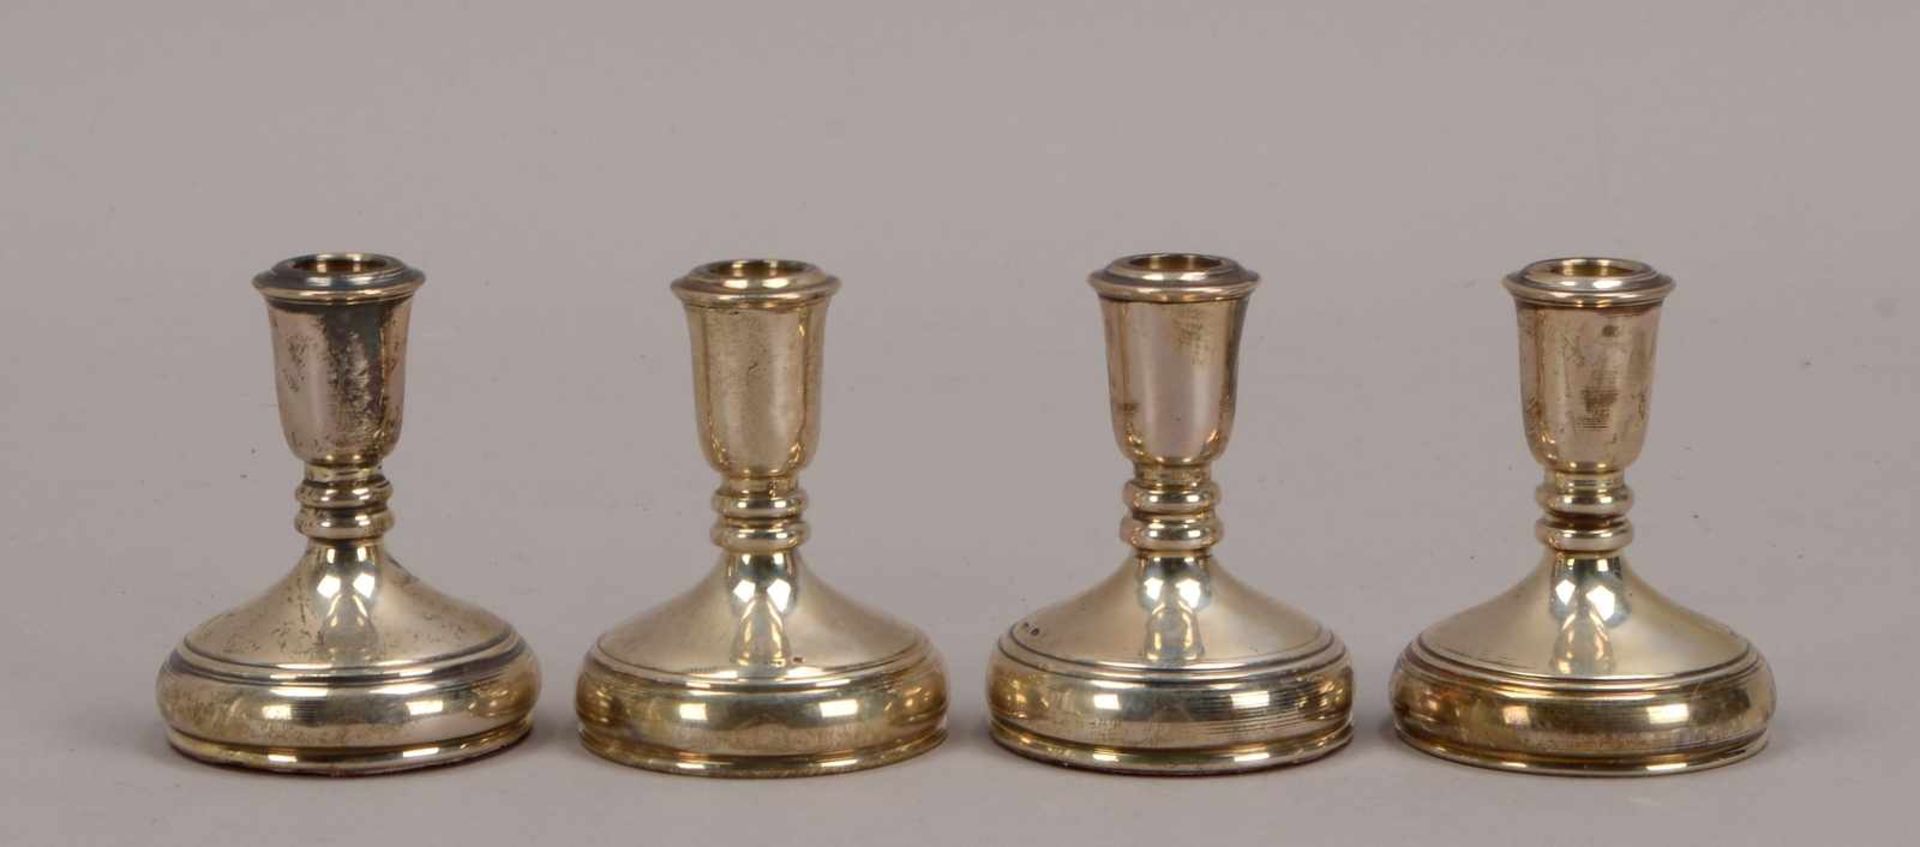 Satz kleiner Kerzenleuchter, 925 Silber (gefüllt), 4 Stück; Höhe jeweils 7 cm